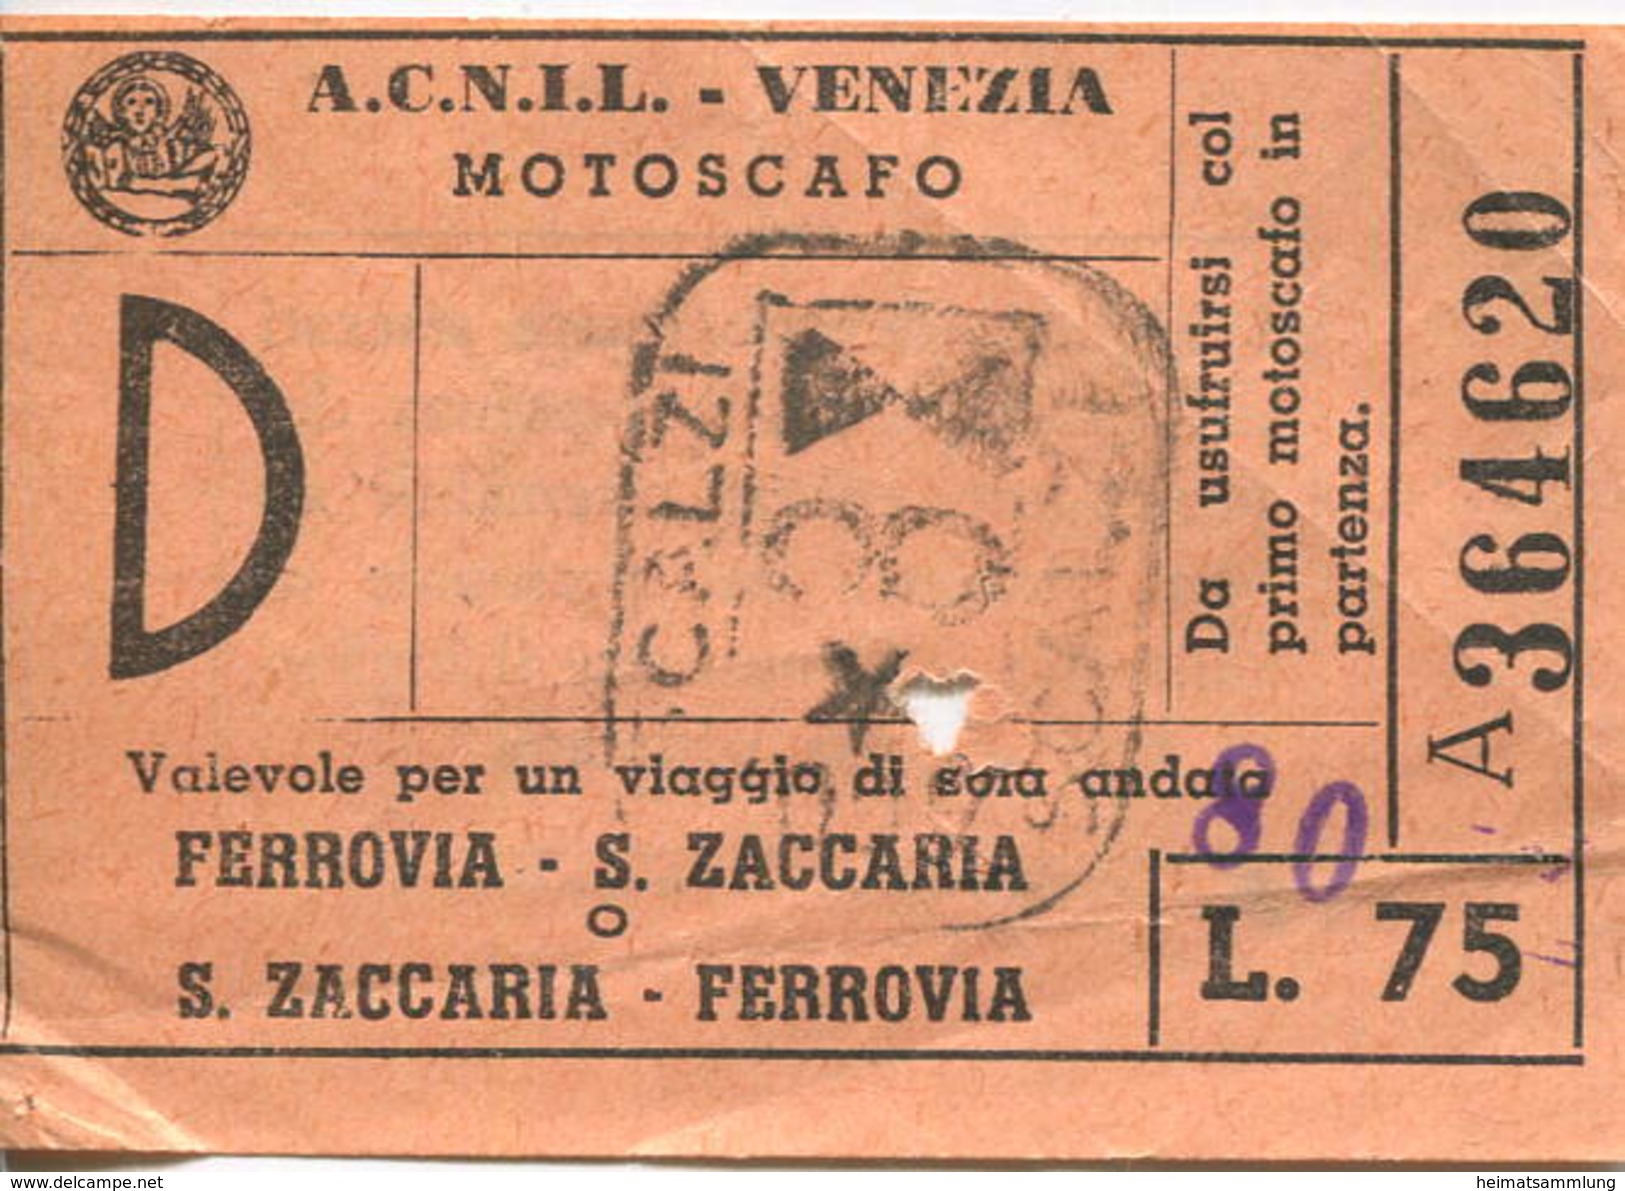 Italien - A.C.N.I.L. - Venezia - Motoscafo - Ferrovia - S. Zaccaria - Fahrschein Biglietto L. 75 - Europa